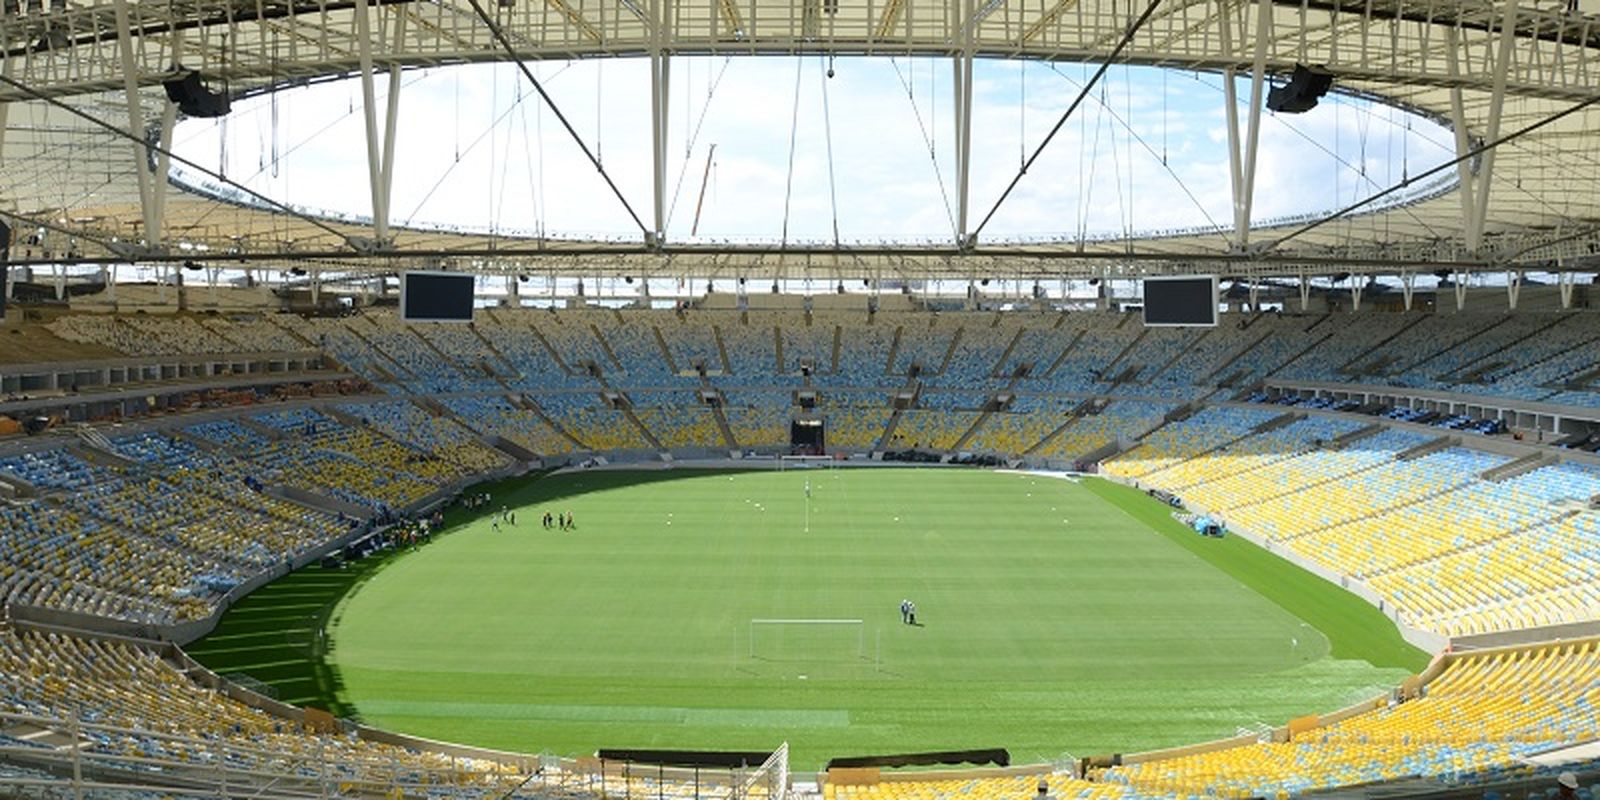 Ferj confirma datas e horários dos quatro primeiros jogos do Flamengo no  Campeonato Carioca; confira